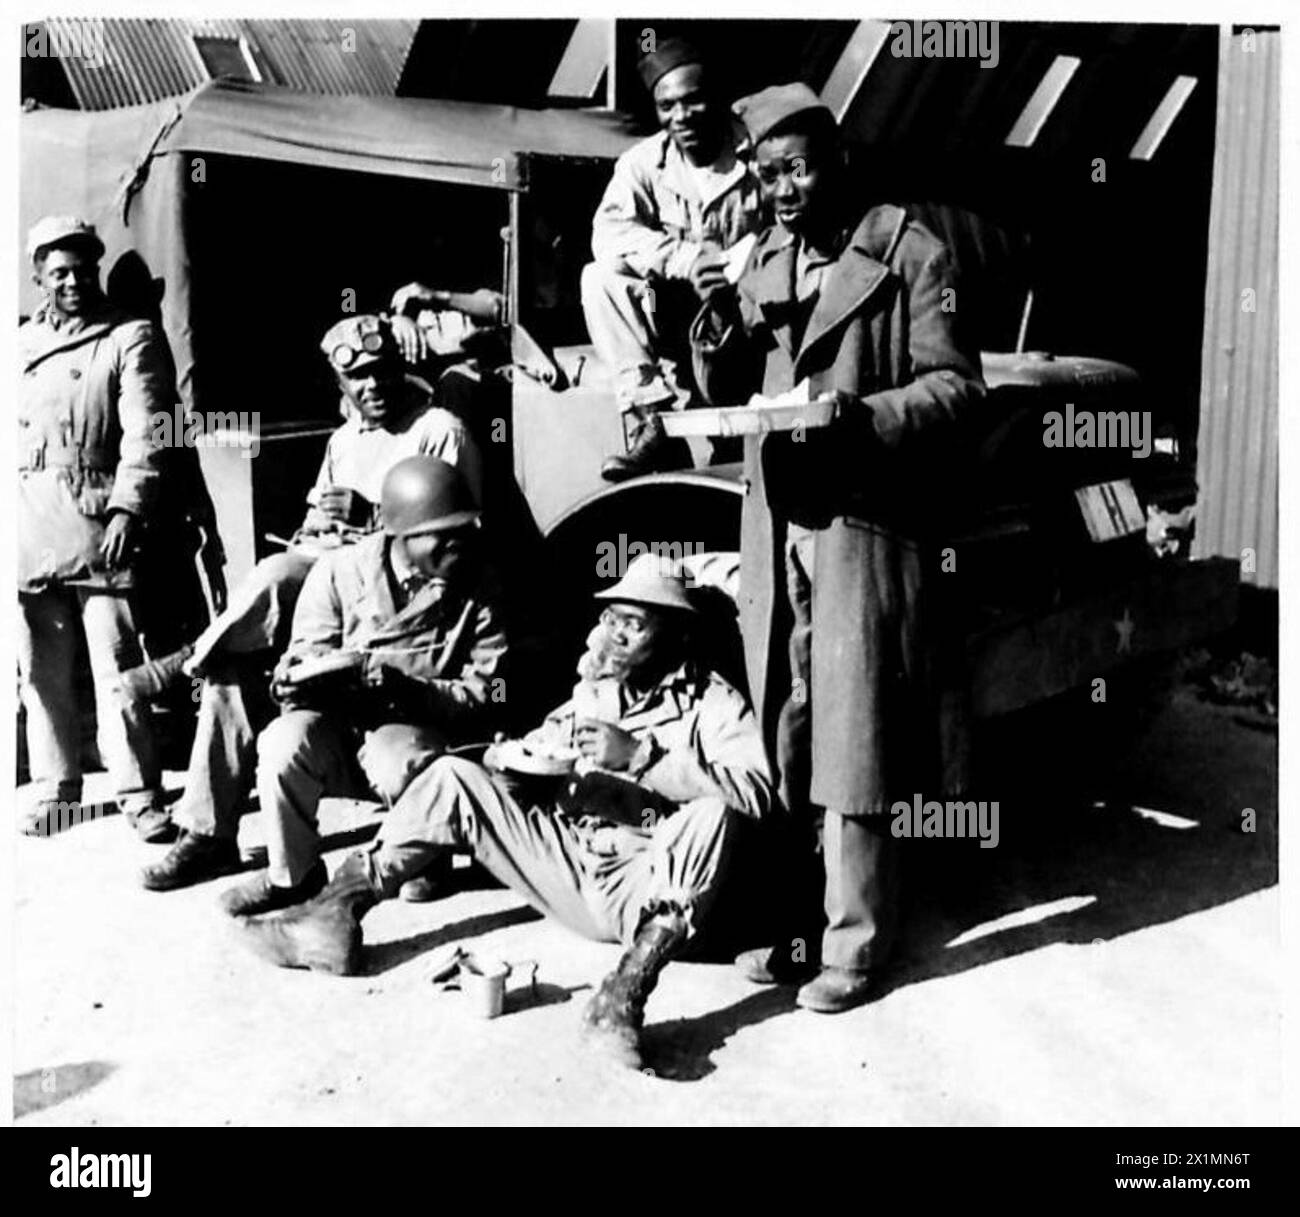 DÉPÔT D'APPROVISIONNEMENT GÉNÉRAL POUR LES MAGASINS ET L'ÉQUIPEMENT AMÉRICAINS - soldats noirs américains travaillant au dépôt ayant leur repas de midi, British Army Banque D'Images